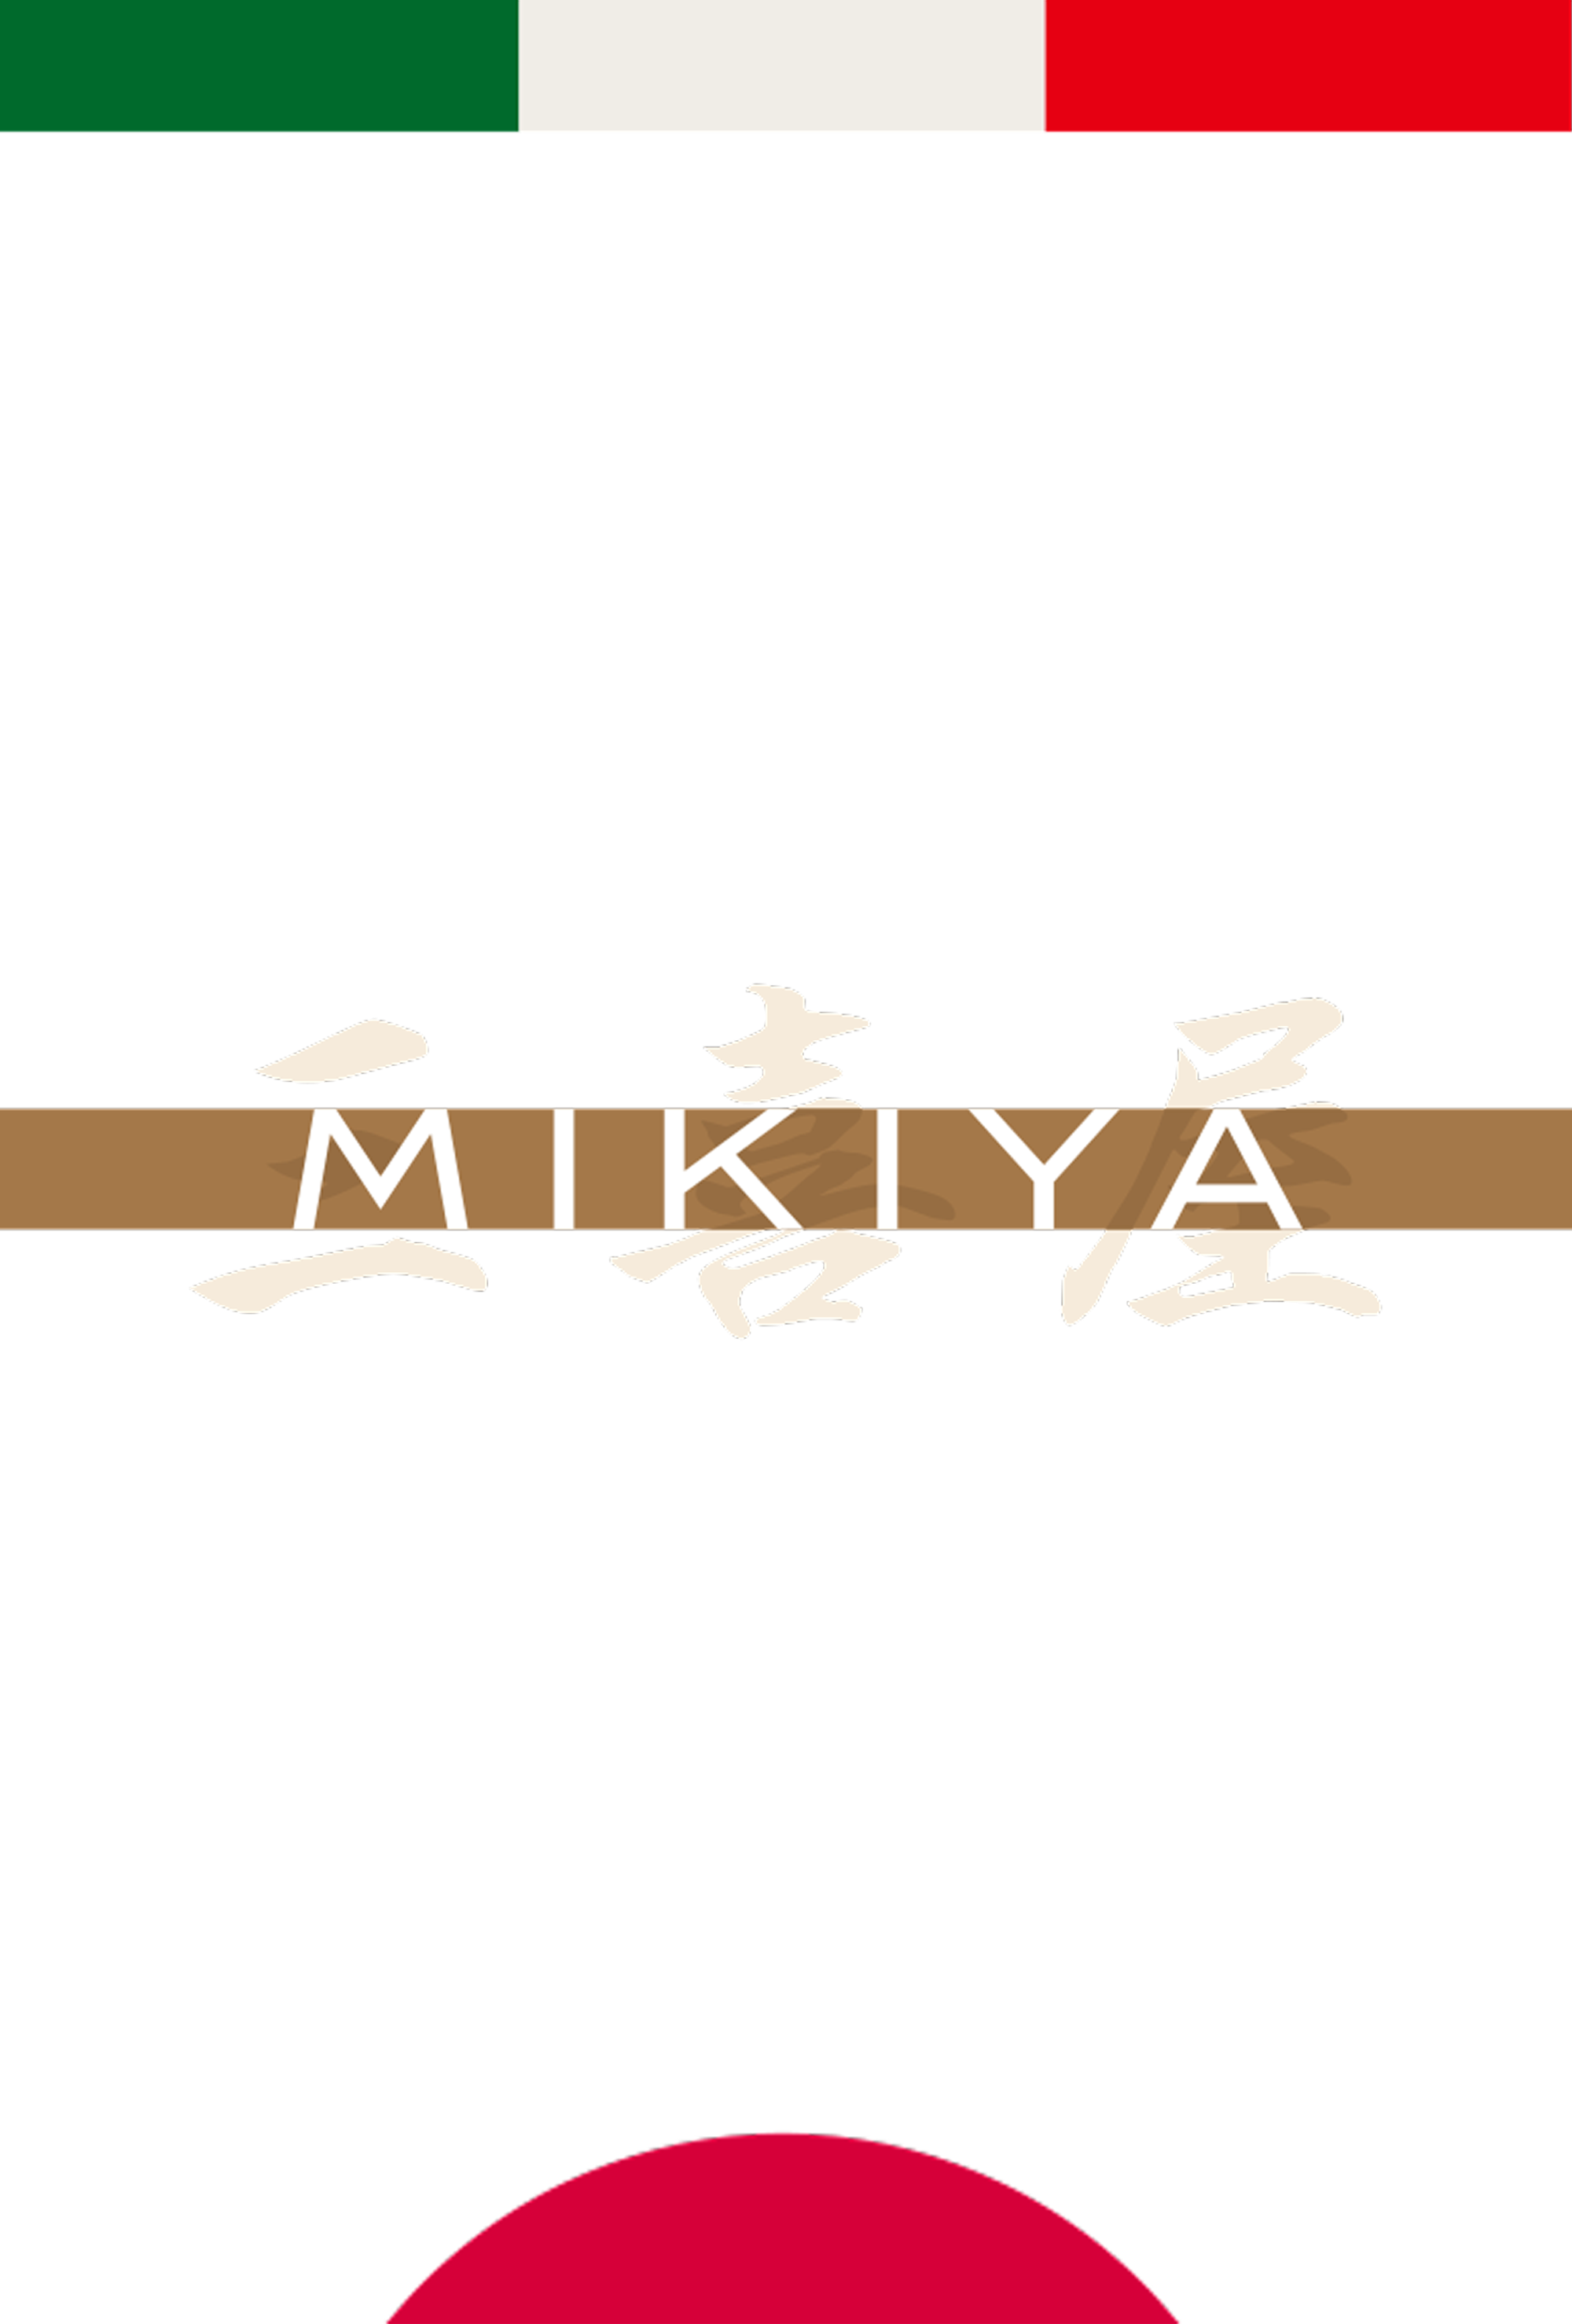 mikiya